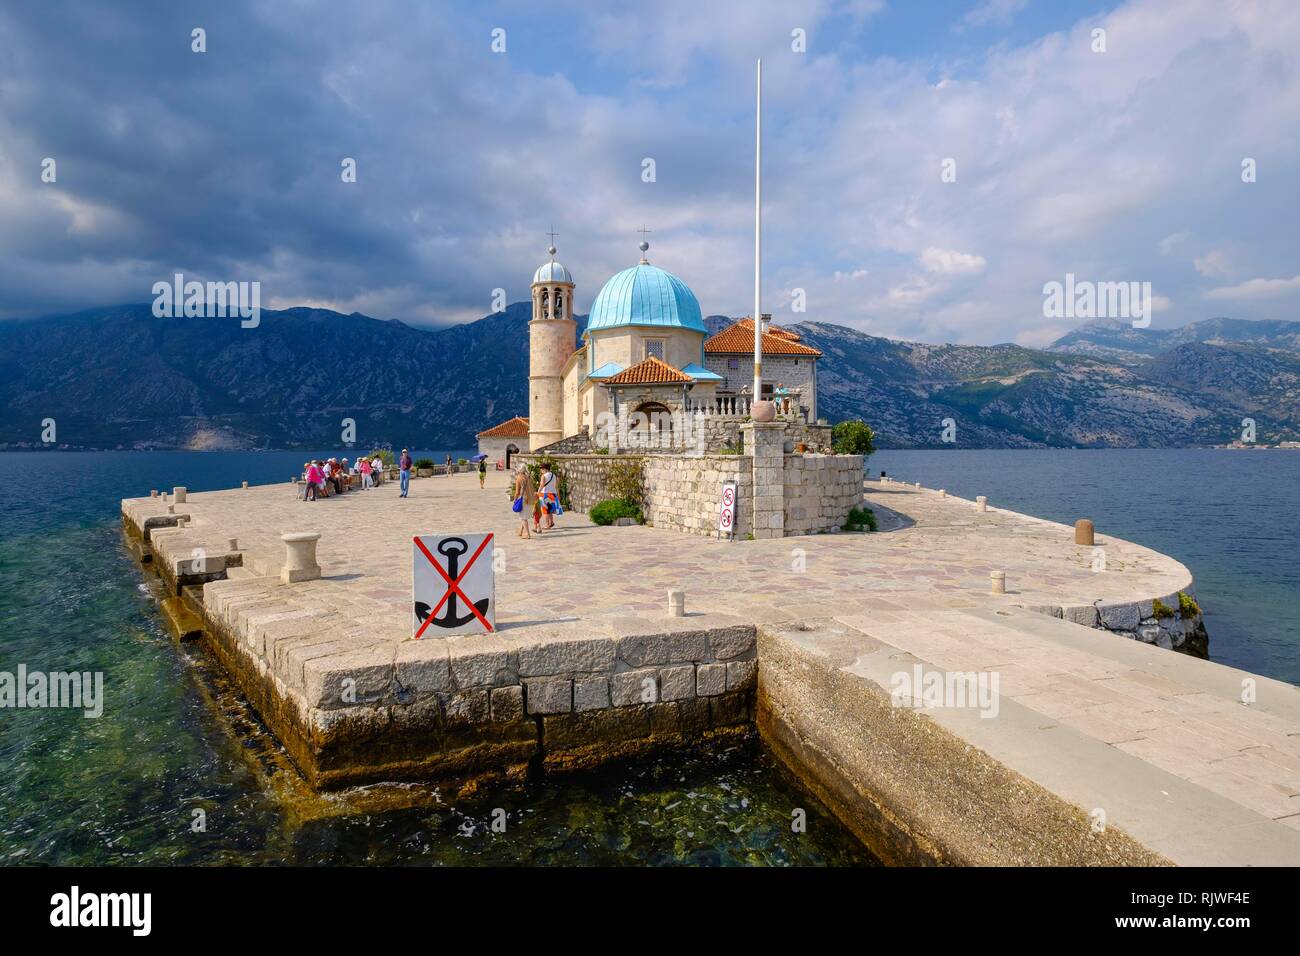 La iglesia de peregrinación de la isla de Maria de la roca, Gospa od Skrpjela, bahía de Kotor, provincia de Kotor, Montenegro Foto de stock